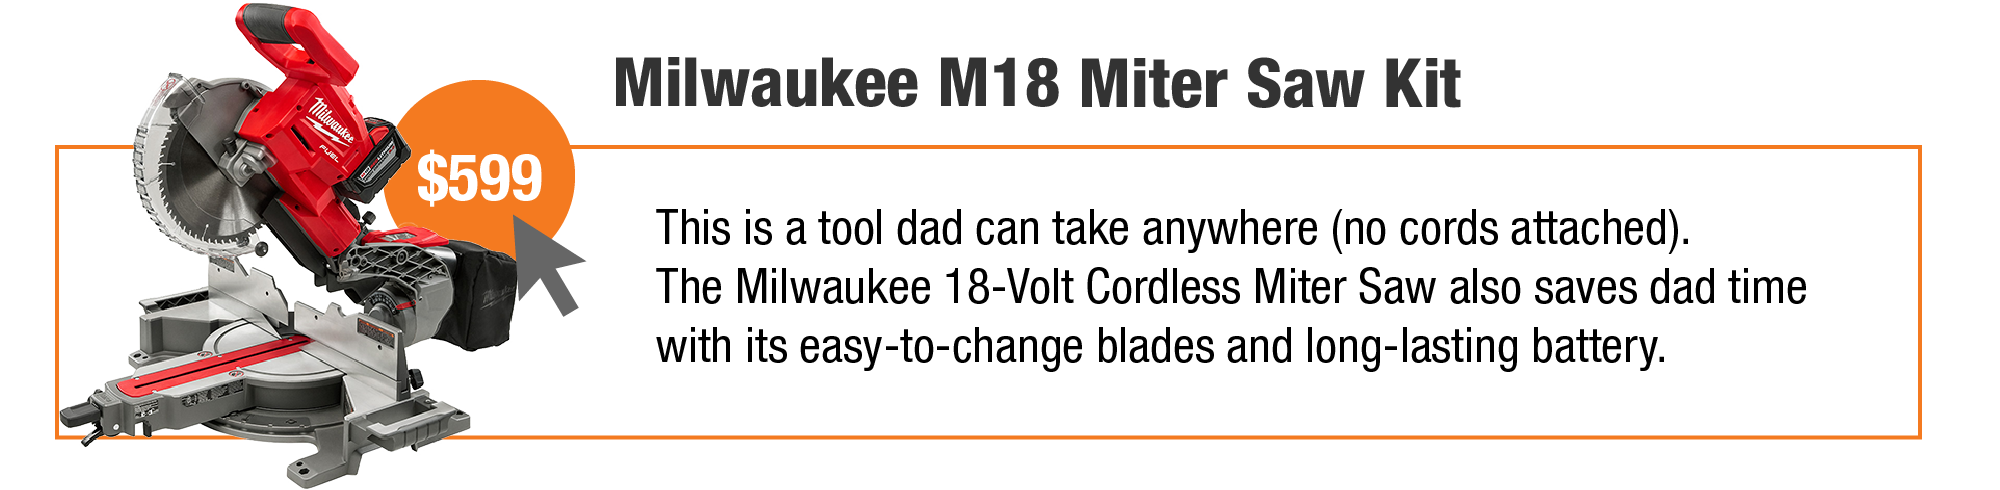 Milwaukee M18 Miter Saw Kit